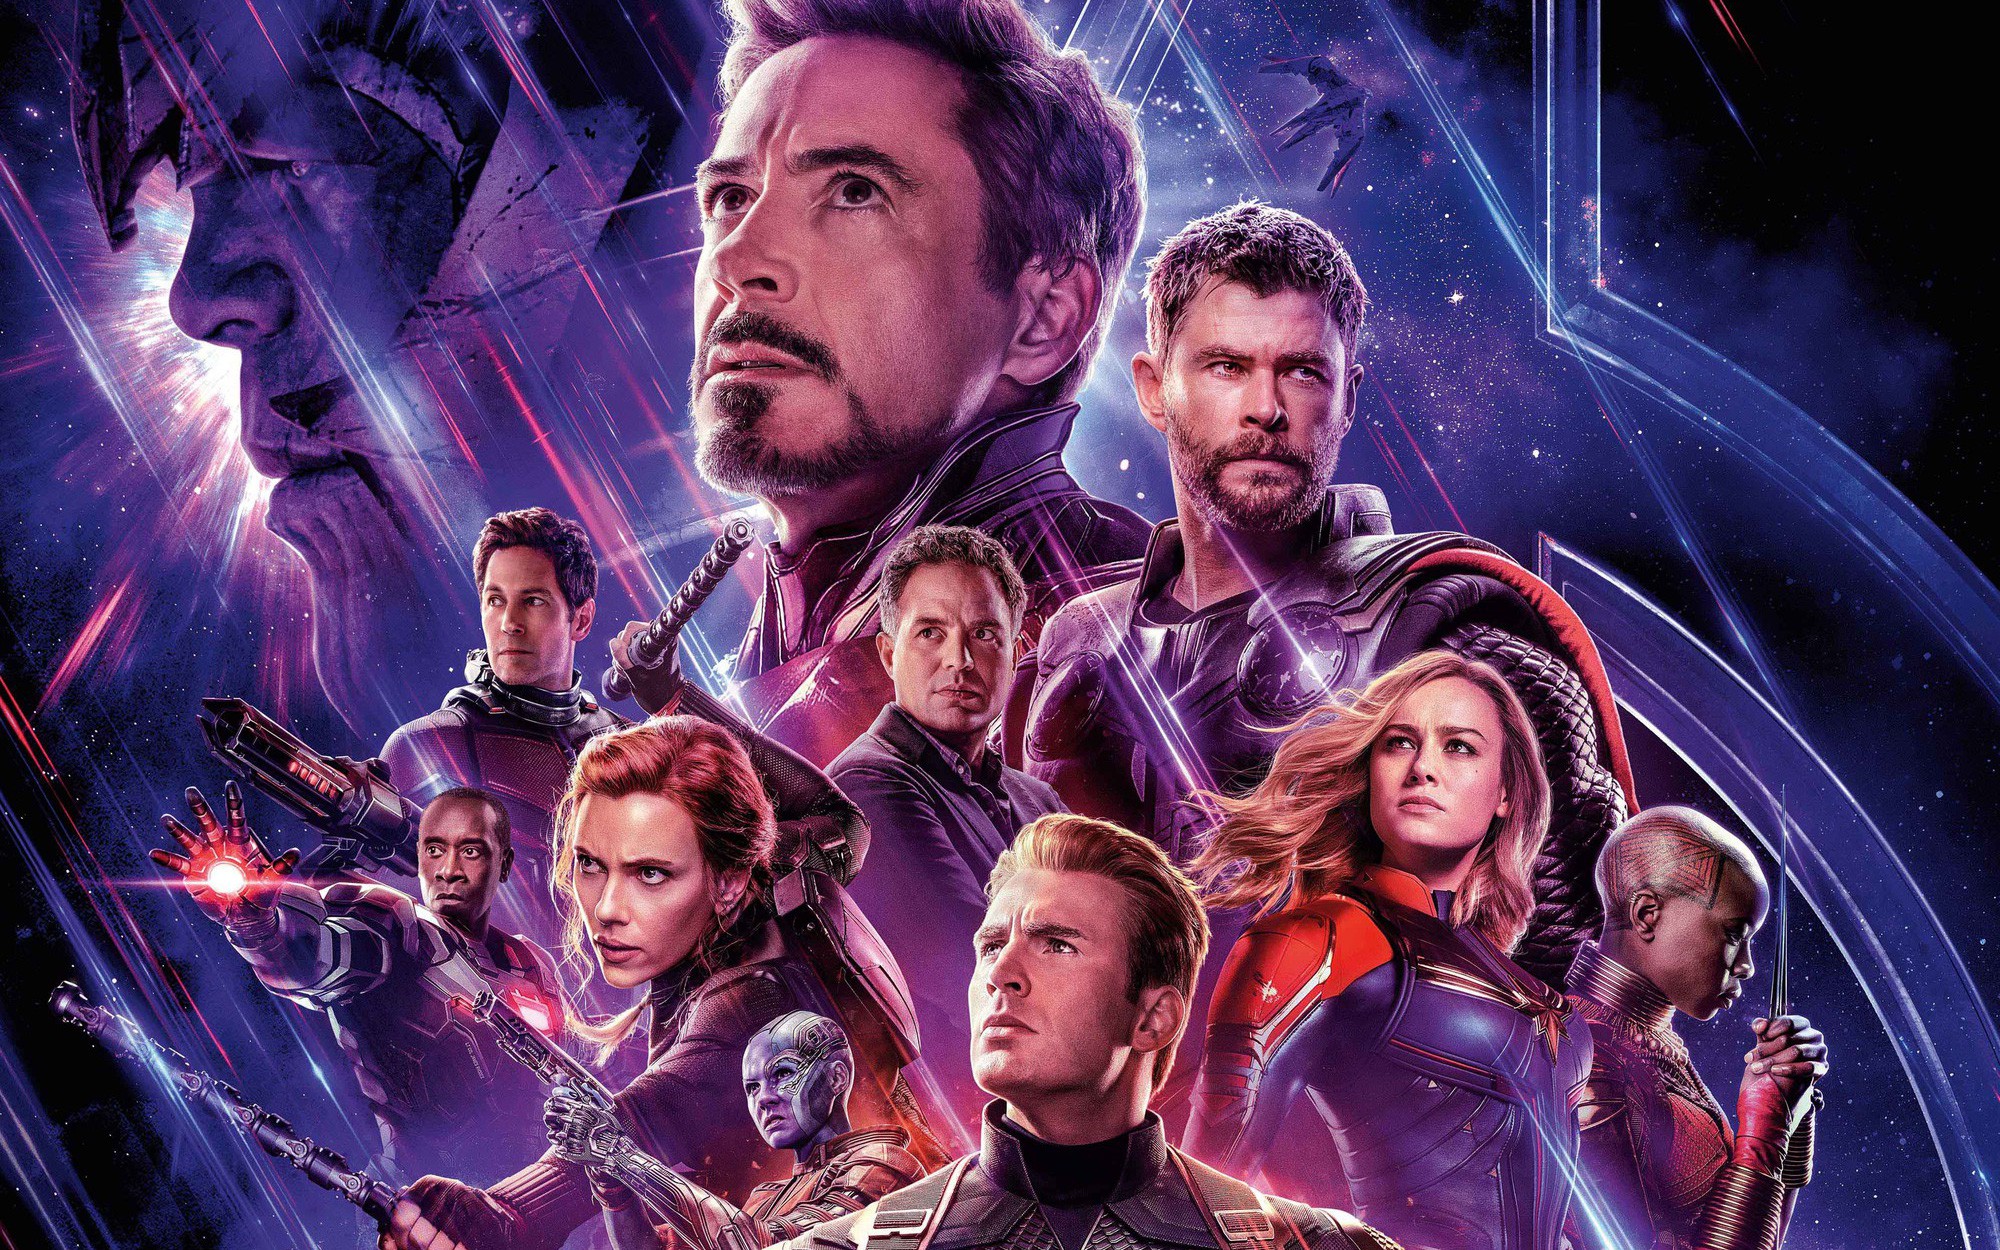 Avengers: Endgame đã trở thành bộ phim được mong đợi nhất của năm, với sự kết thúc của câu chuyện Marvel. Hãy cùng xem những hình ảnh đầy cảm xúc về các anh hùng của chúng ta, khi họ đoàn kết để chống lại thế lực đen tối và bảo vệ thế giới.